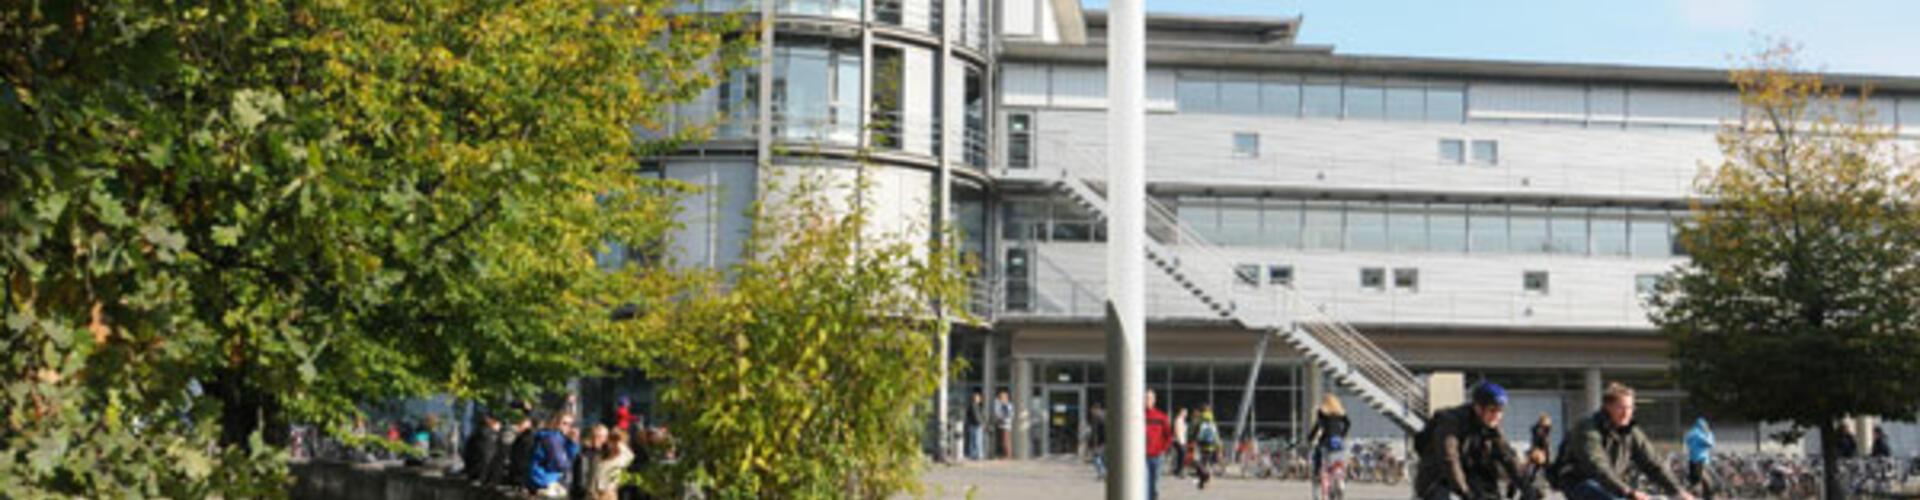 Campus der Georg-August-Universität Göttingen